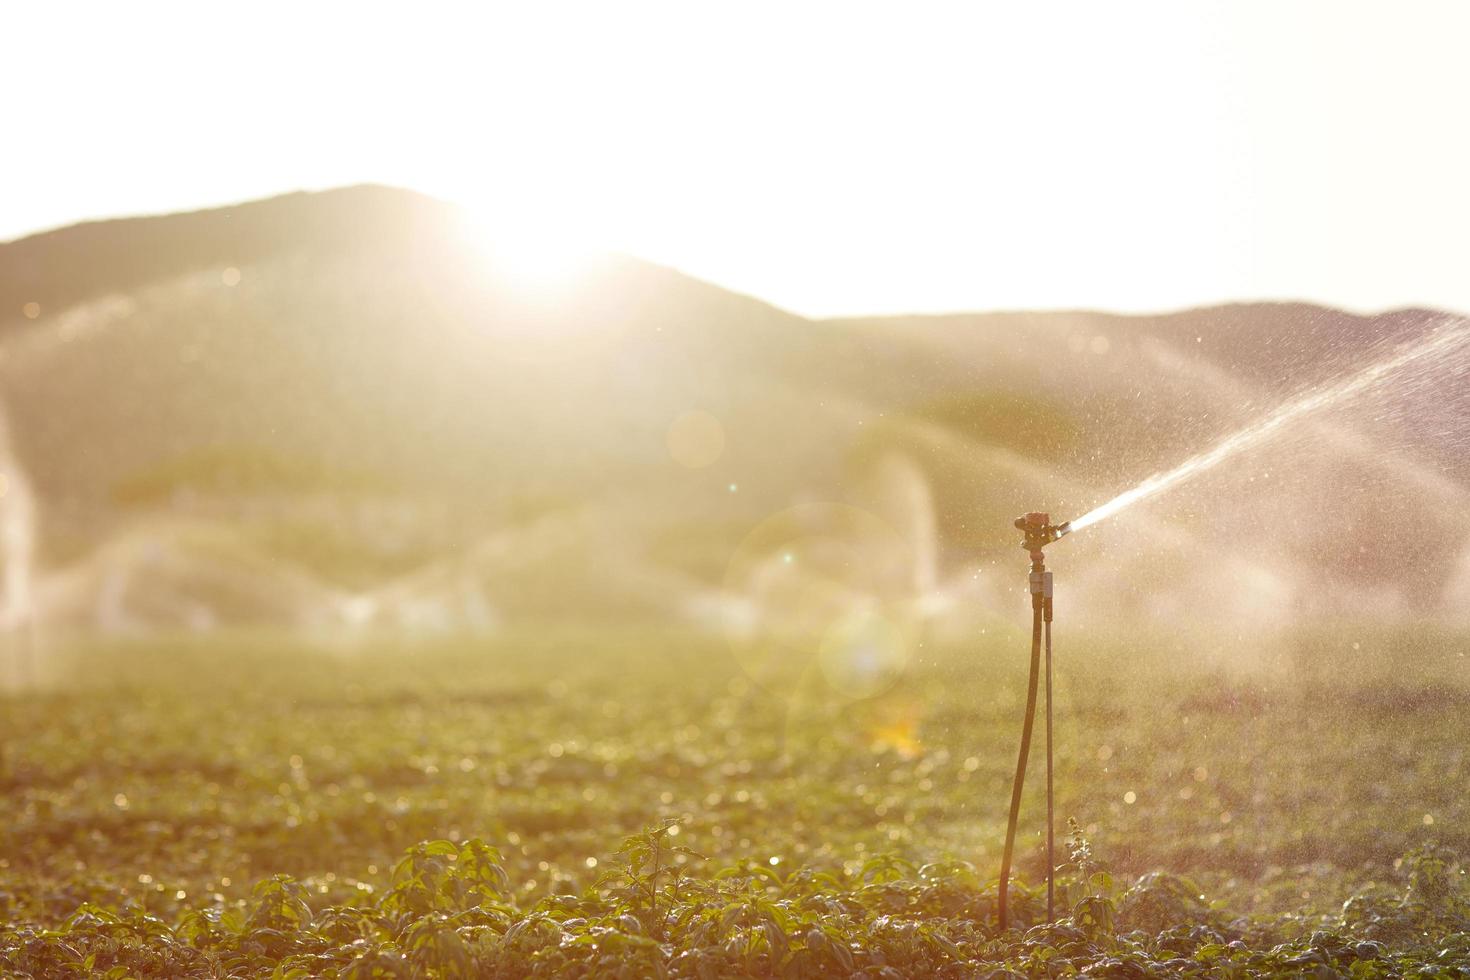 aspersor de irrigação em um campo de manjericão ao pôr do sol foto